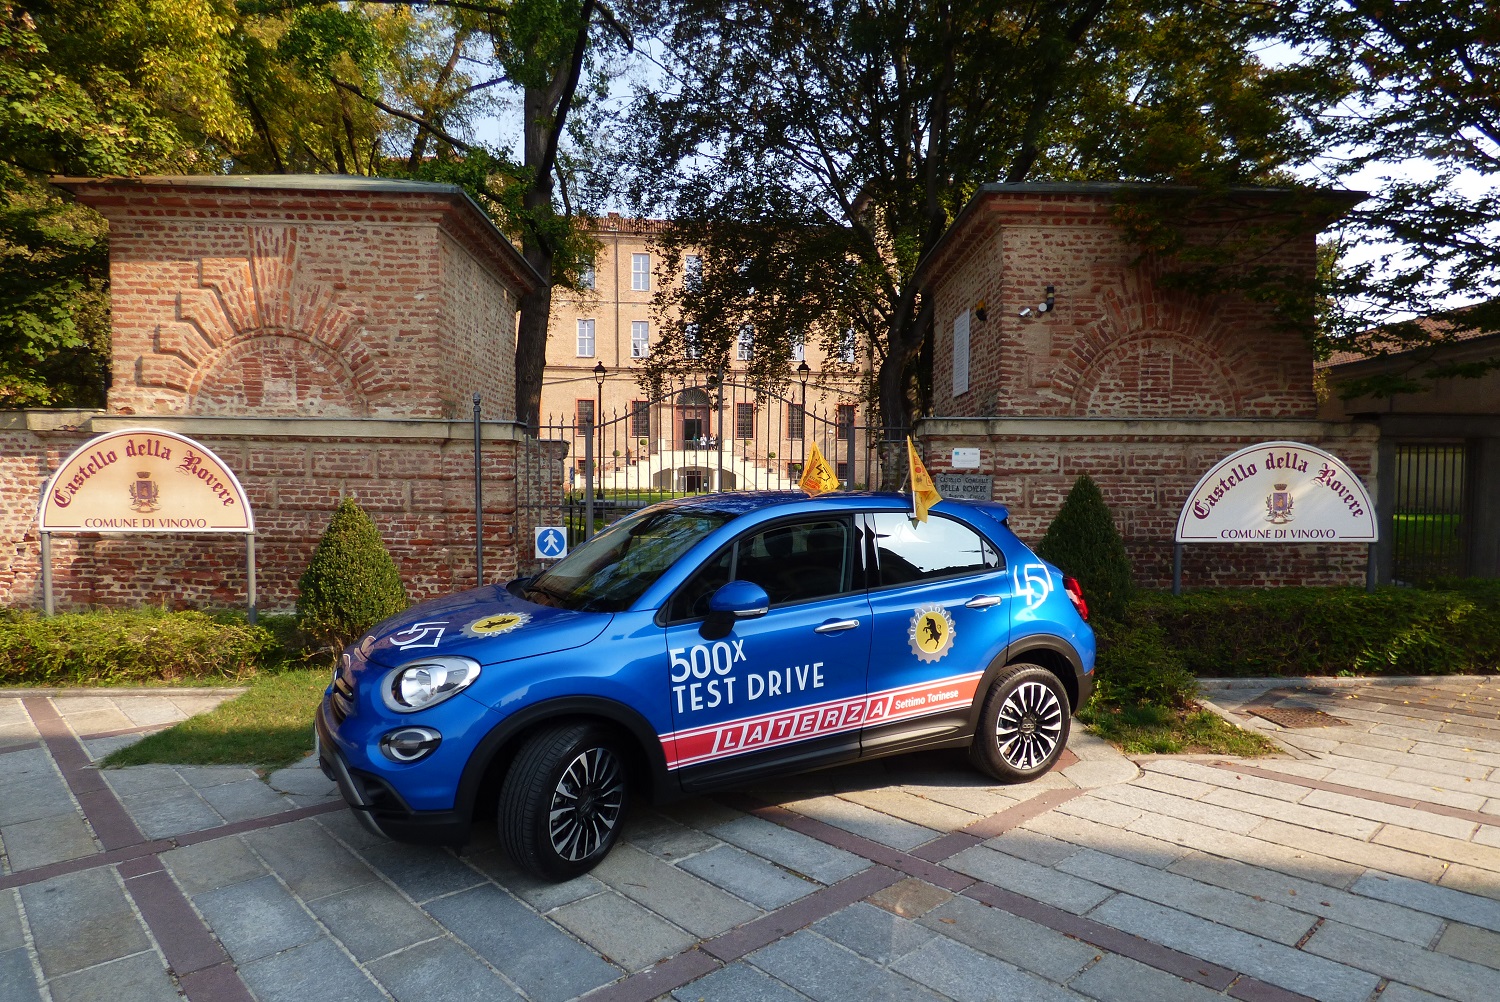 GRAN GALA CEIRANO 2018 - FIAT 500X TEST DRIVE